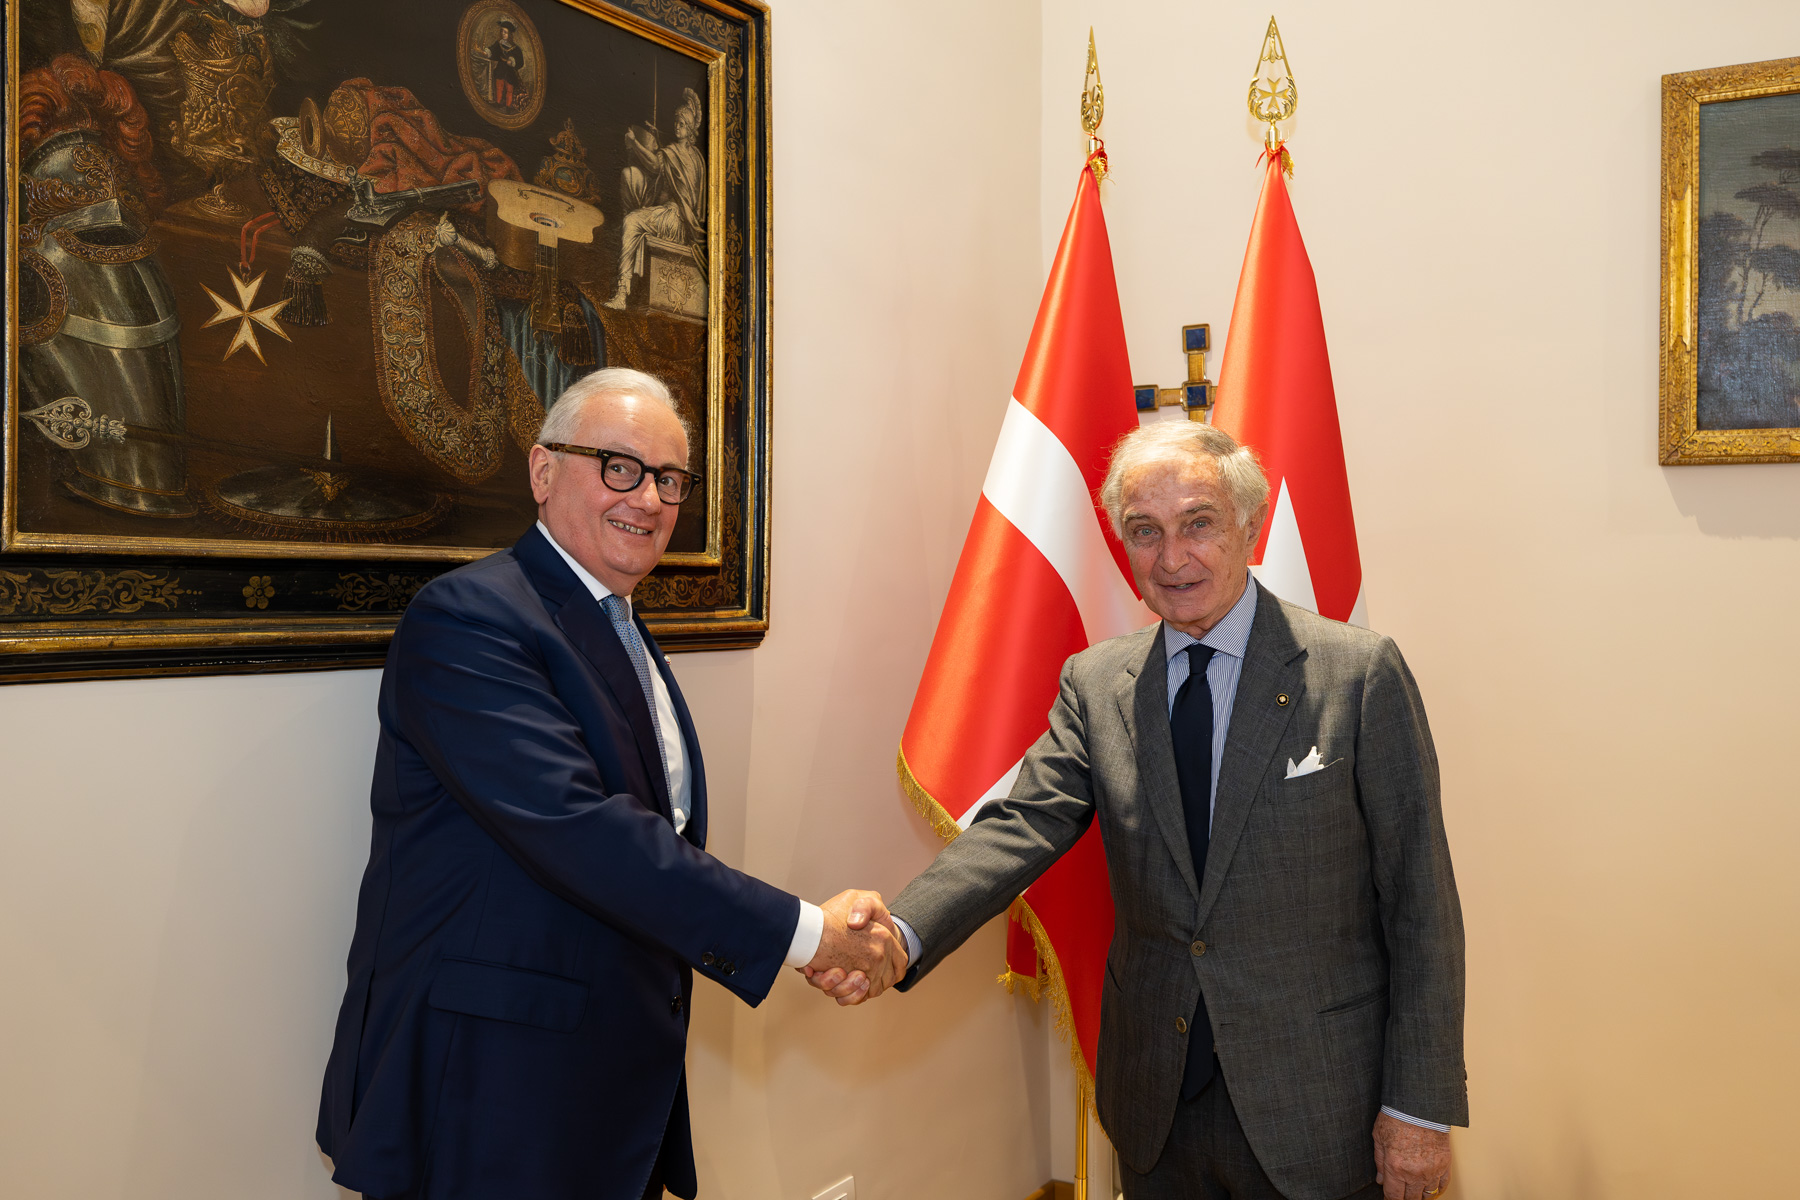 L’Ambasciatore Giampaolo Cantini nuovo Segretario Generale degli Affari Esteri dell’Ordine di Malta